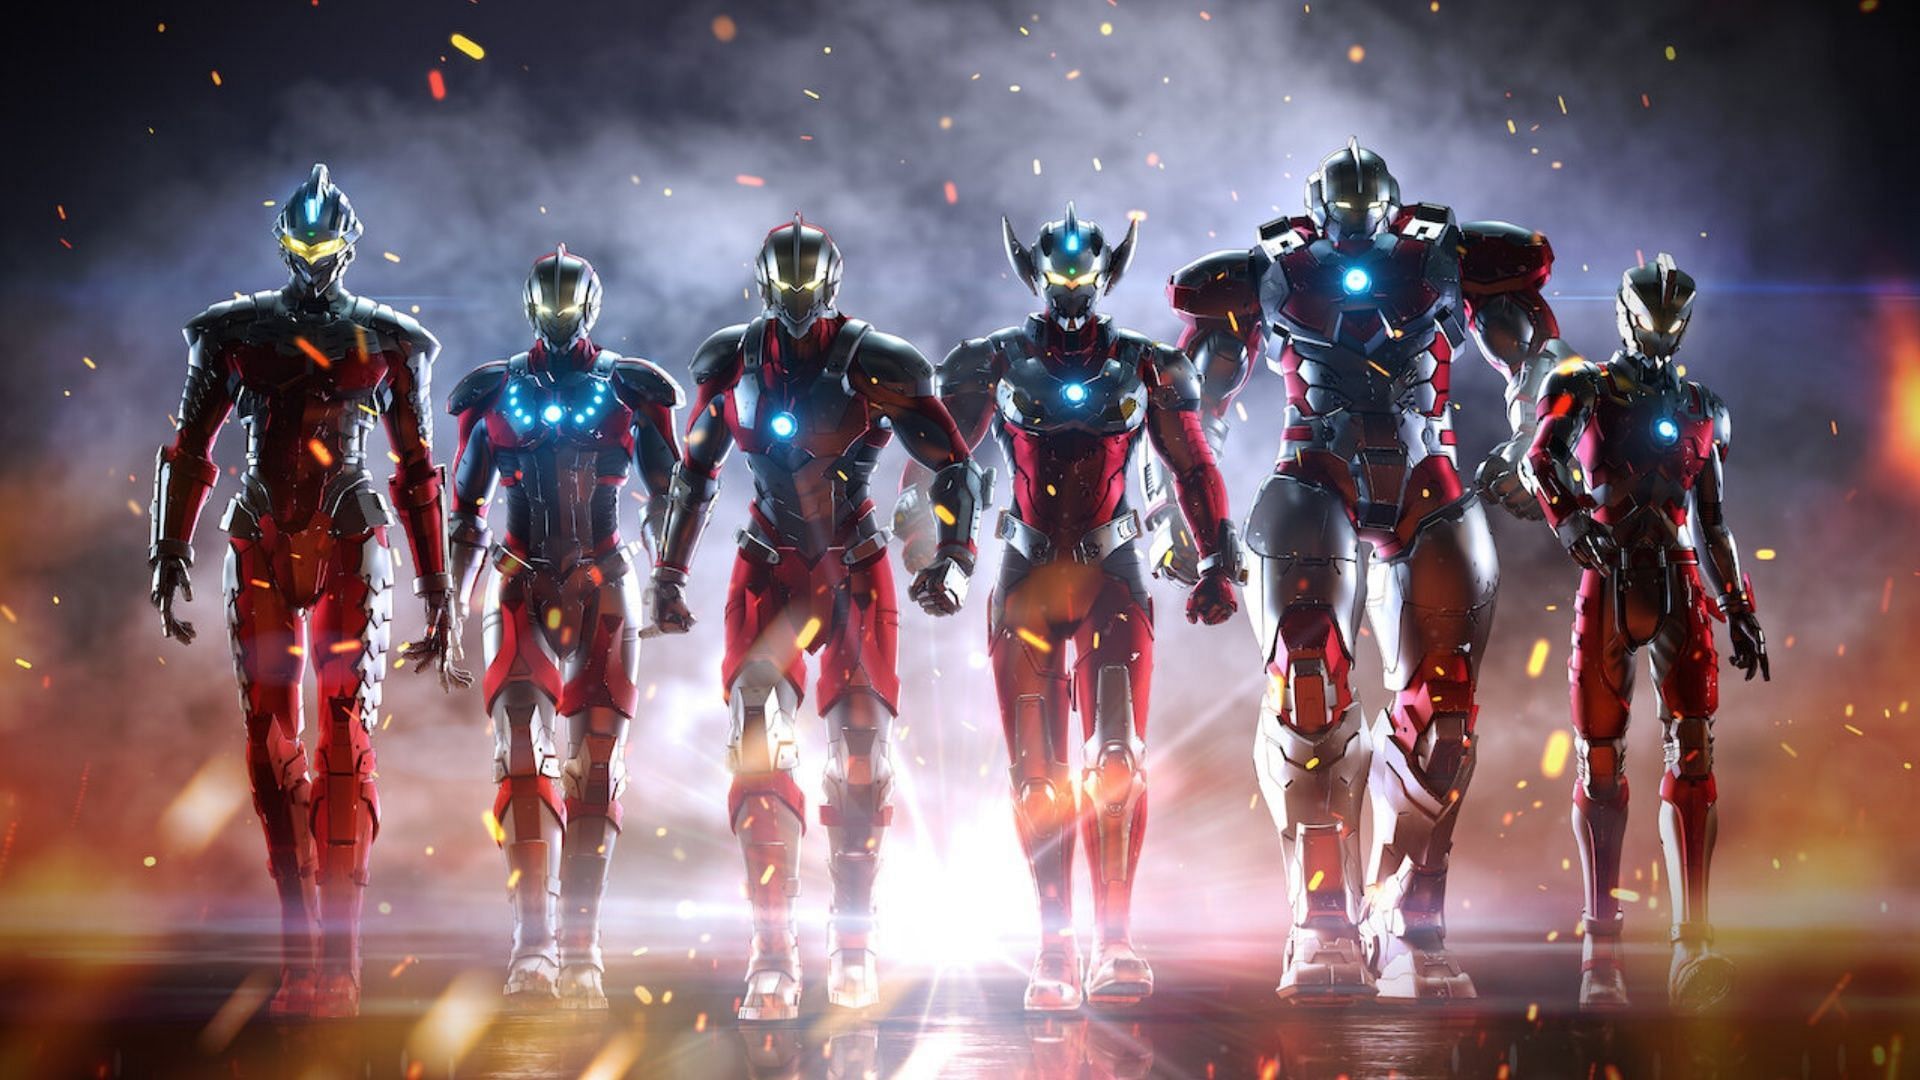 Ultraman season 3 Netflix's Ultraman drops new trailer for the series